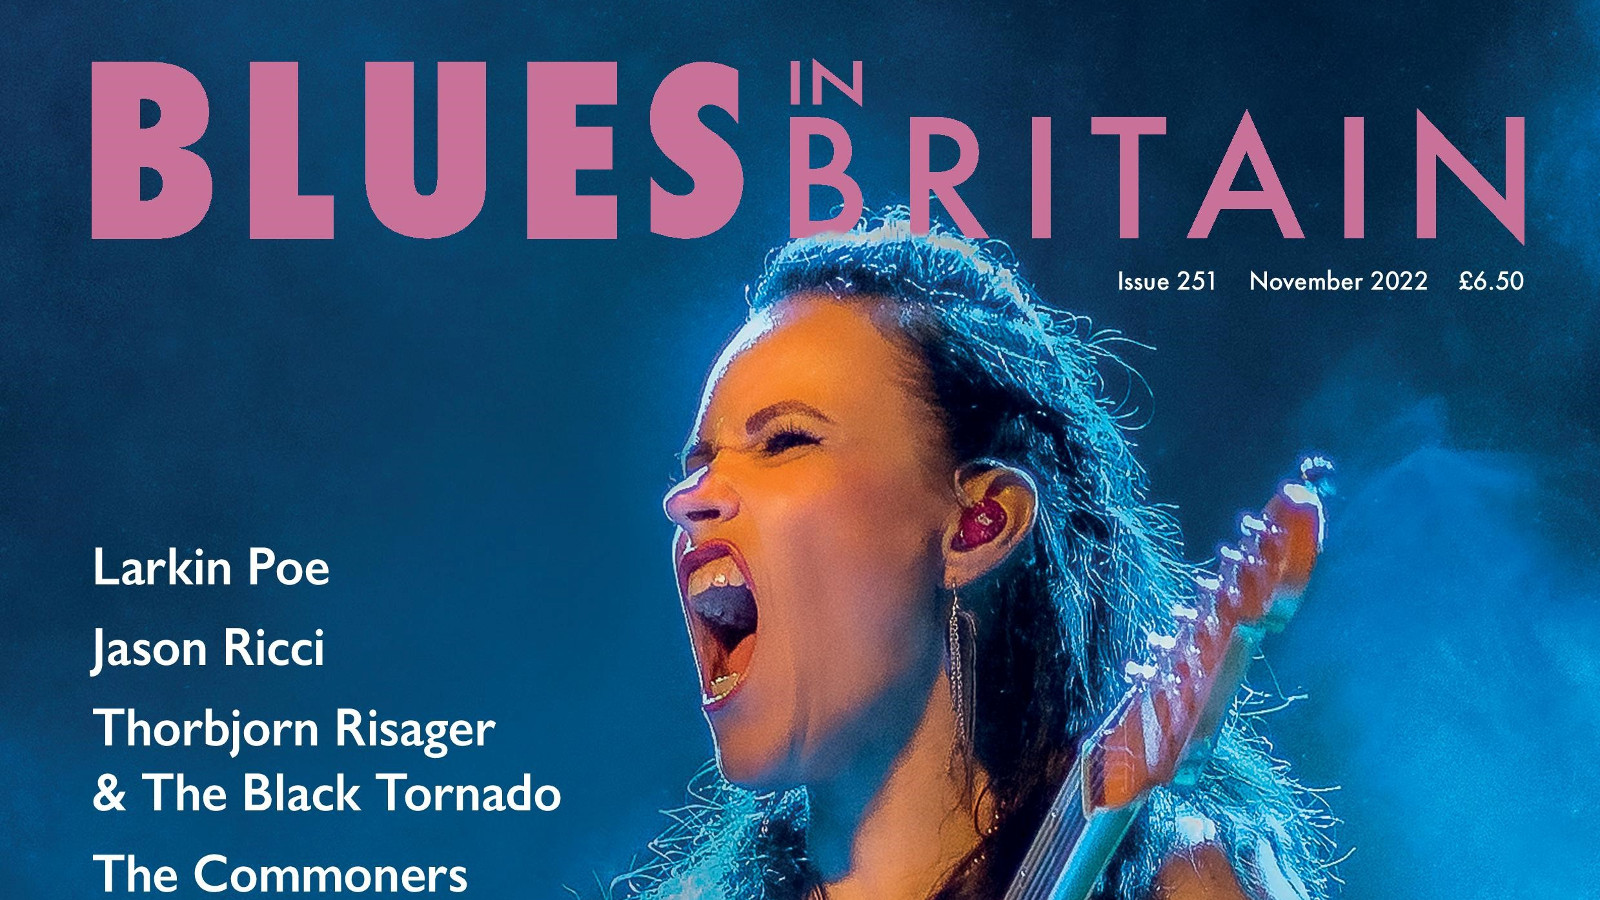 Kuvassa on Erja Lyytinen laulamassa ja kuvan tausta on sininen. Päällä on lehden kannen nimi Blues in Britain.  